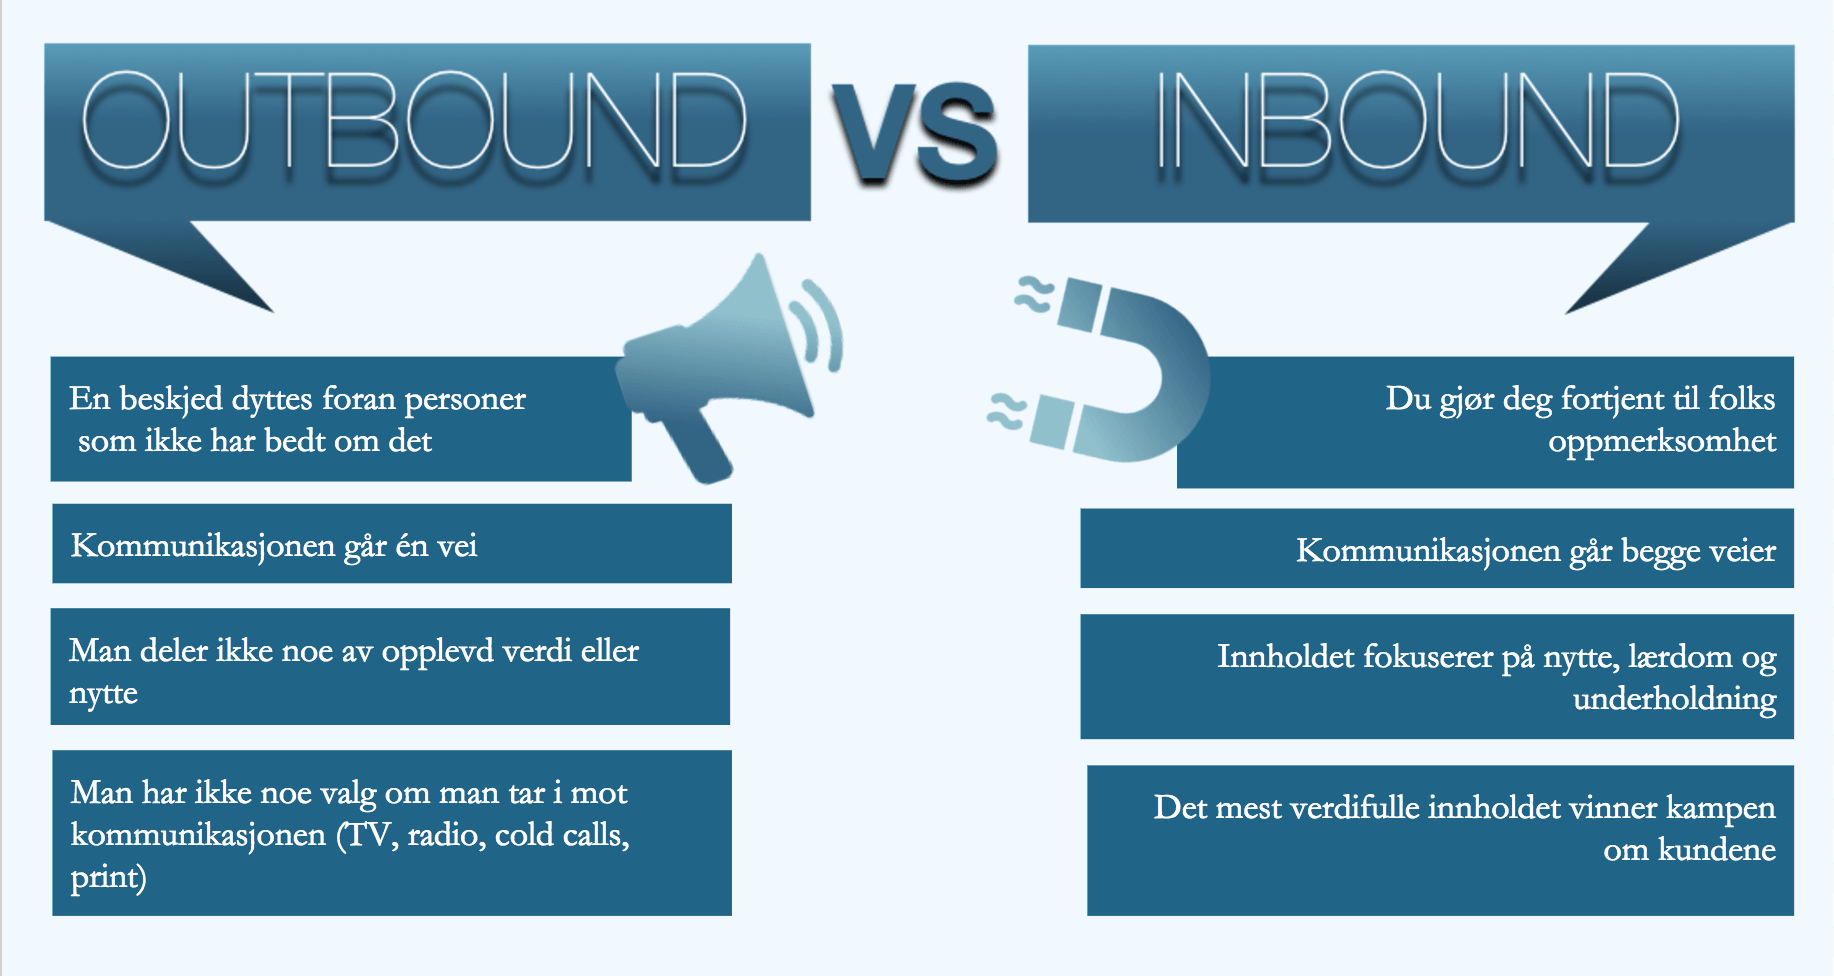 Outbound vs inbound 2